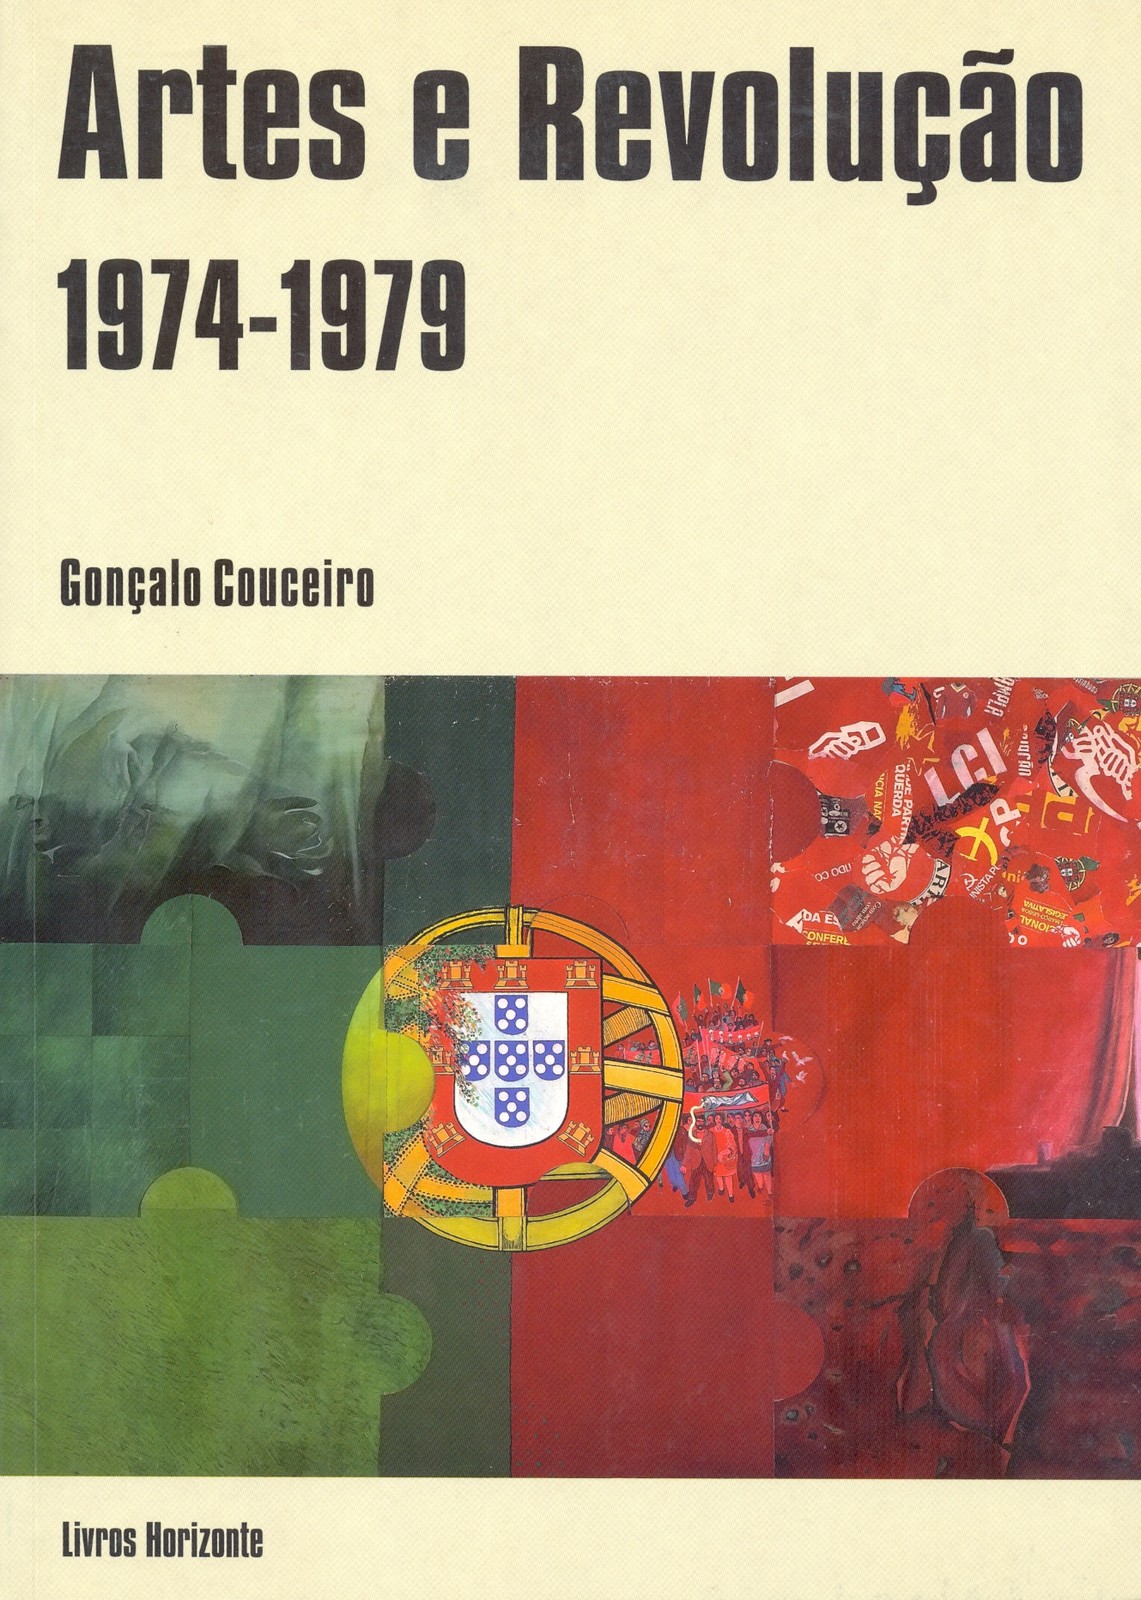 Gonçalo Couceiro - Artes e Revolução (1974-1979)